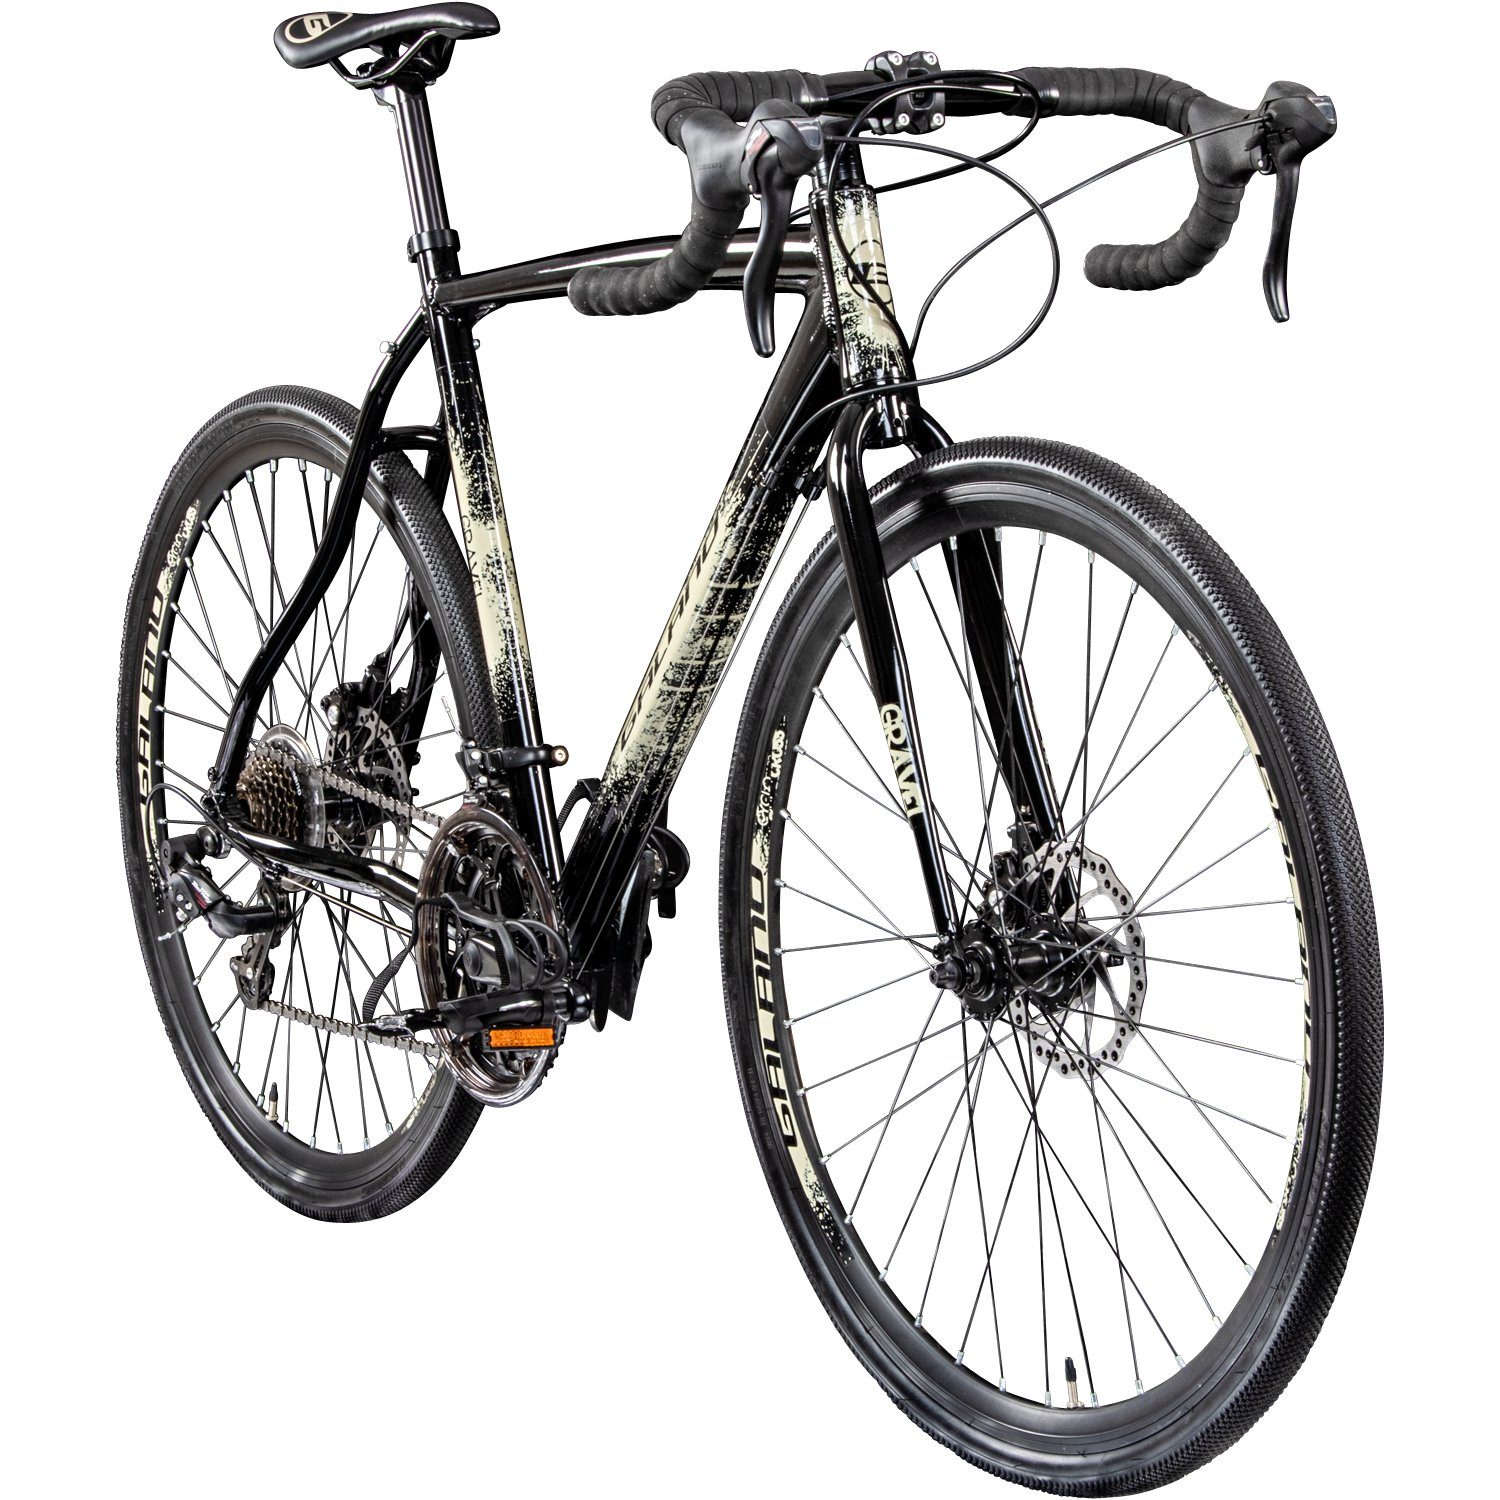 Galano Cyclocross-Rad Gravel STI, 14 Gang, Kettenschaltung, Gravelbike für Damen und Herren 165-185cm Crossbike Fahrrad Cyclocross anthrazit/creme